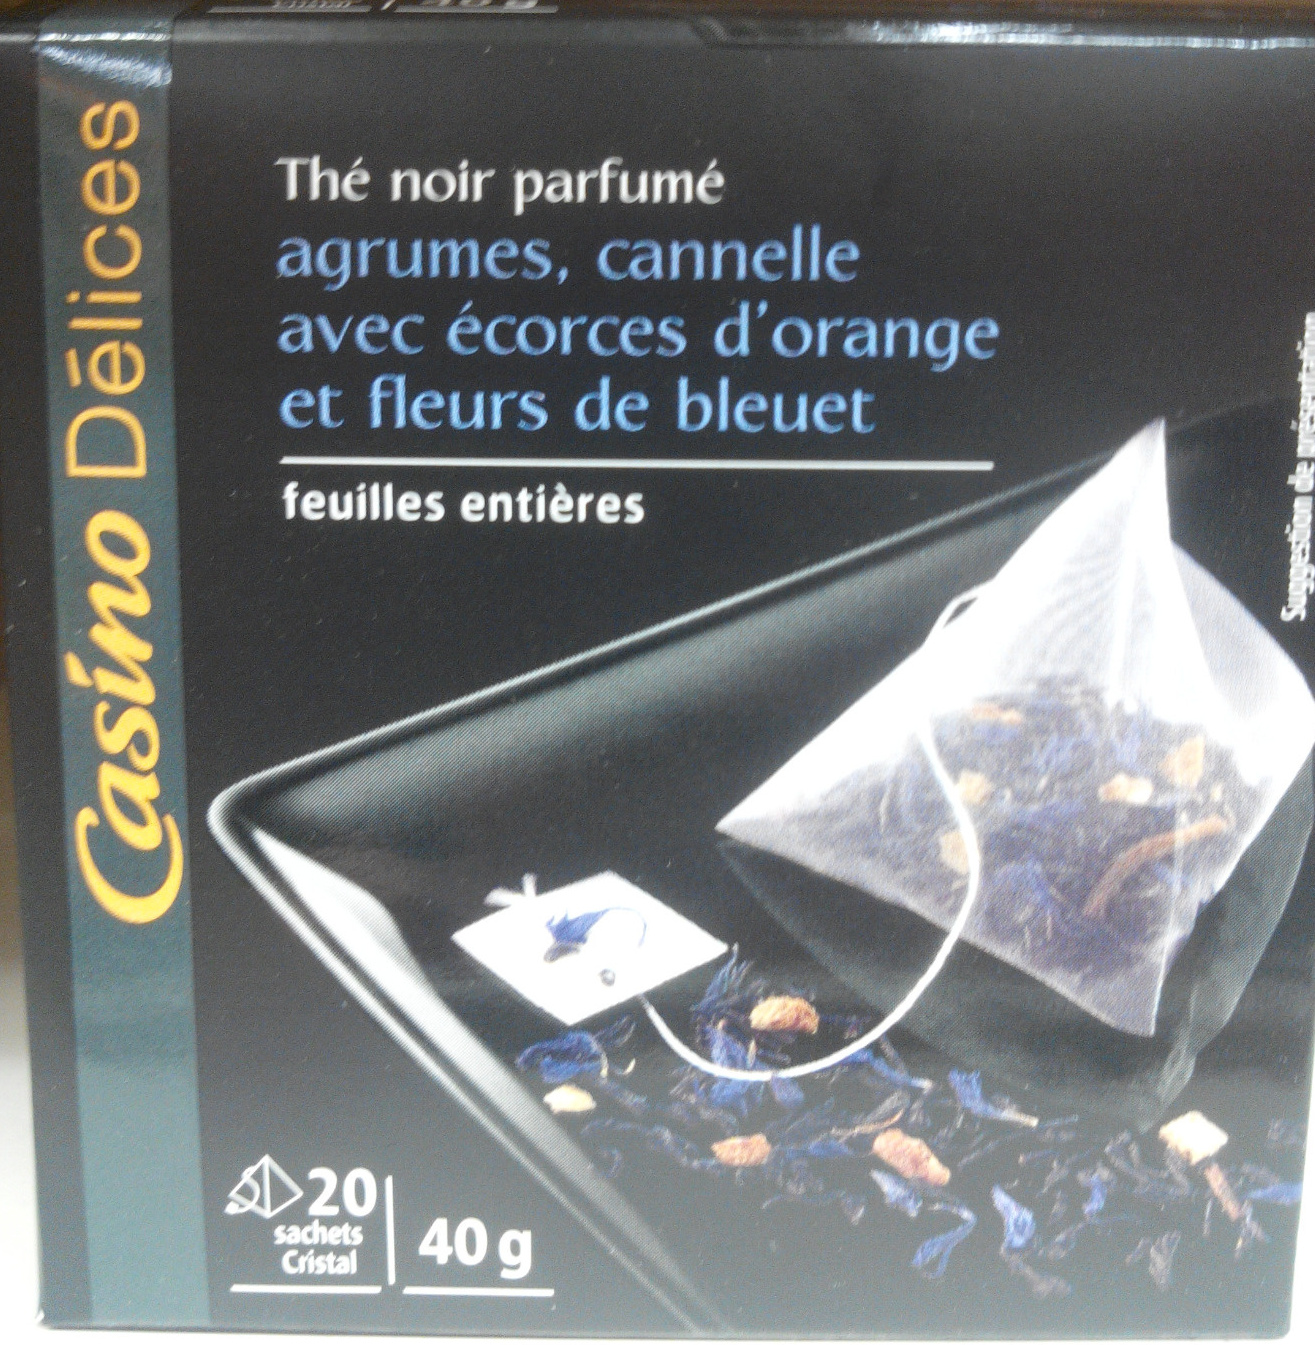 Thé noir parfumé agrumes, cannelle avec écorces d'orange et fleurs de bleuet - Product - fr